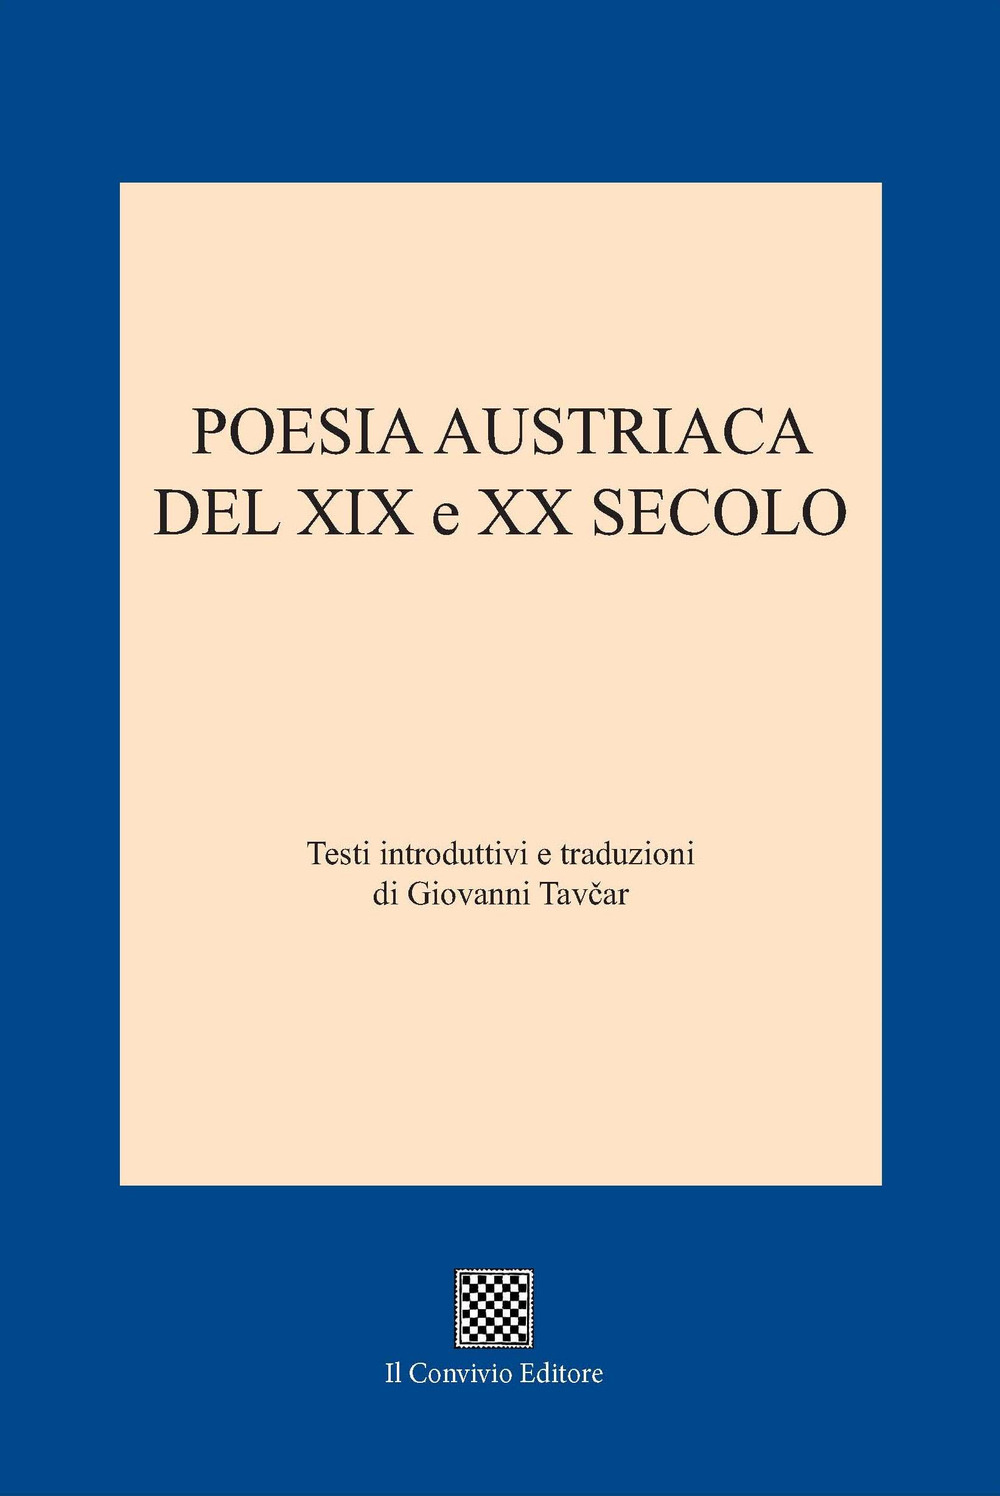 Image of Poesia austriaca del XIX e XX secolo